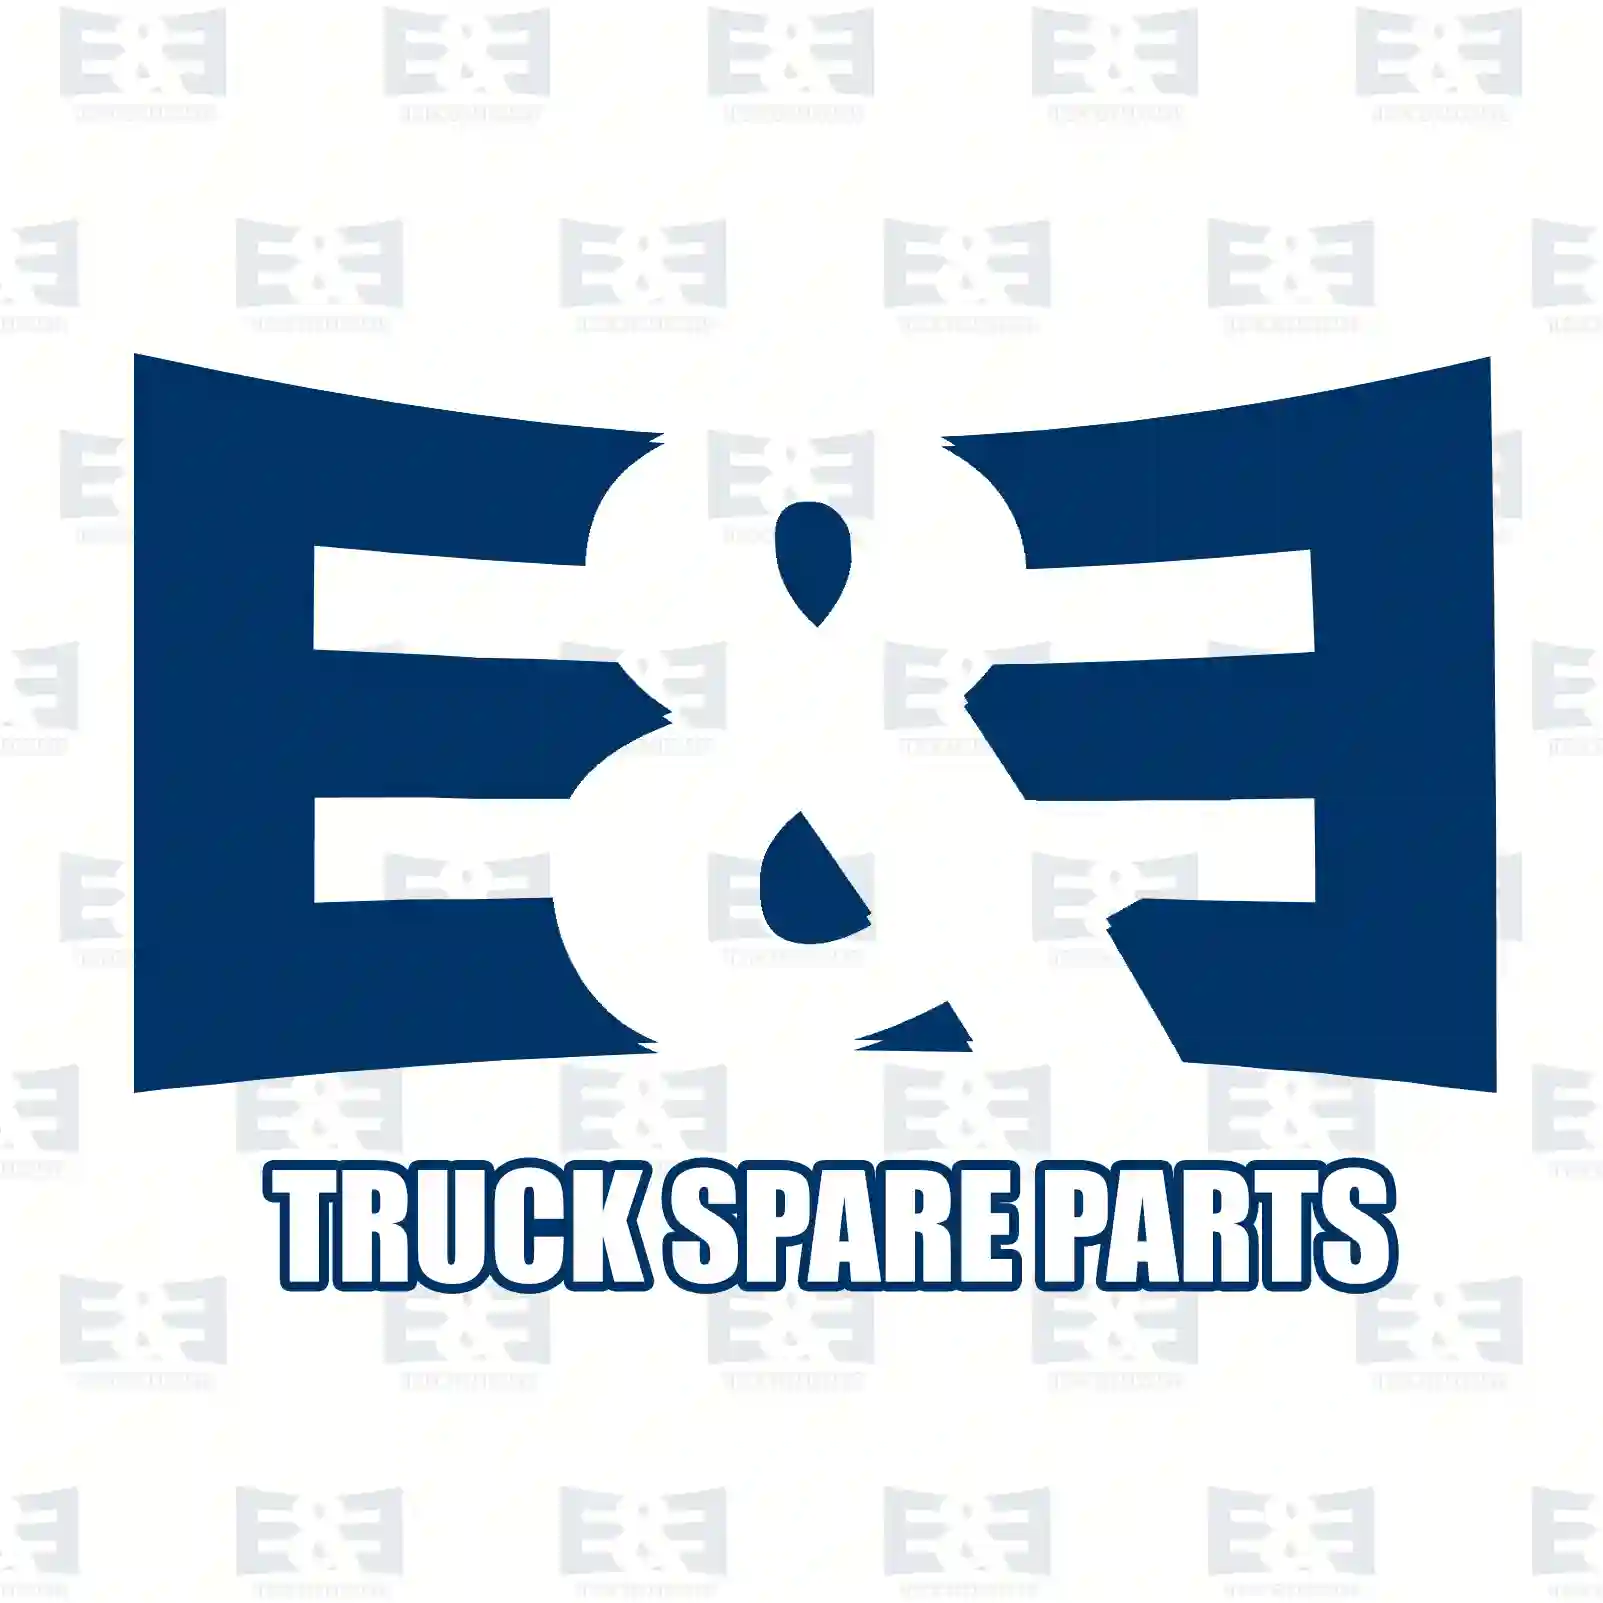 Belt tensioner, 2E2203743, 1385379, 1445915, 6C1Q-6A228-BC ||  2E2203743 E&E Truck Spare Parts | Truck Spare Parts, Auotomotive Spare Parts Belt tensioner, 2E2203743, 1385379, 1445915, 6C1Q-6A228-BC ||  2E2203743 E&E Truck Spare Parts | Truck Spare Parts, Auotomotive Spare Parts